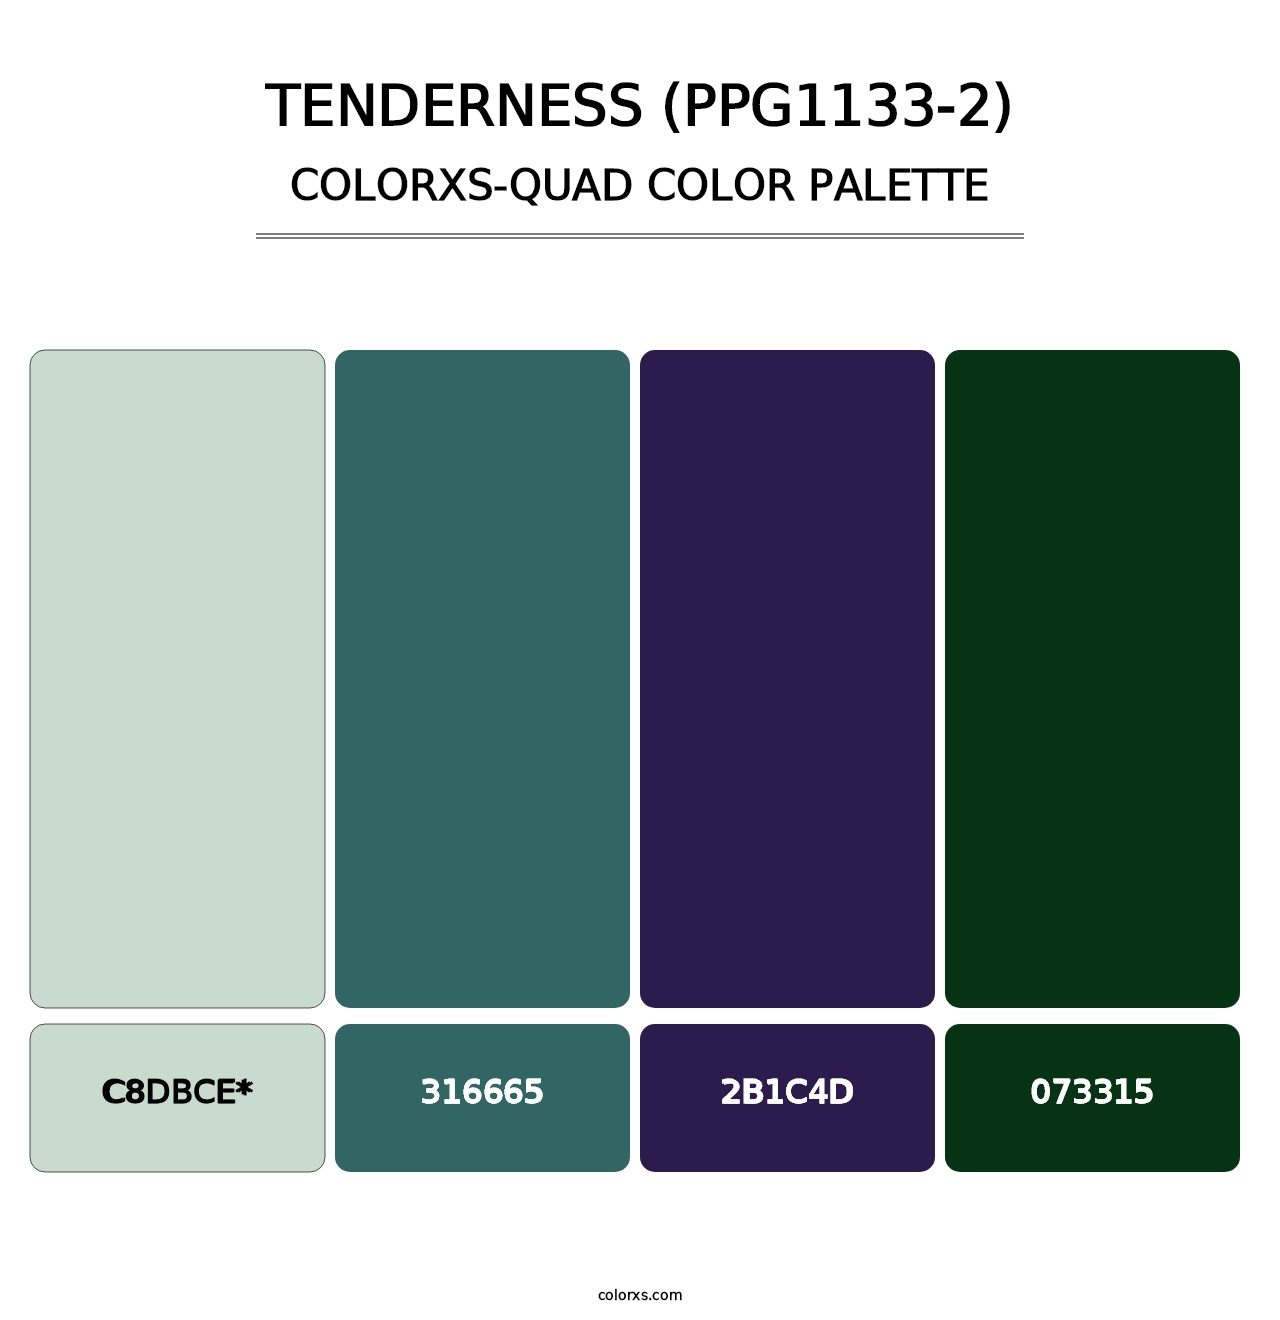 Tenderness (PPG1133-2) - Colorxs Quad Palette